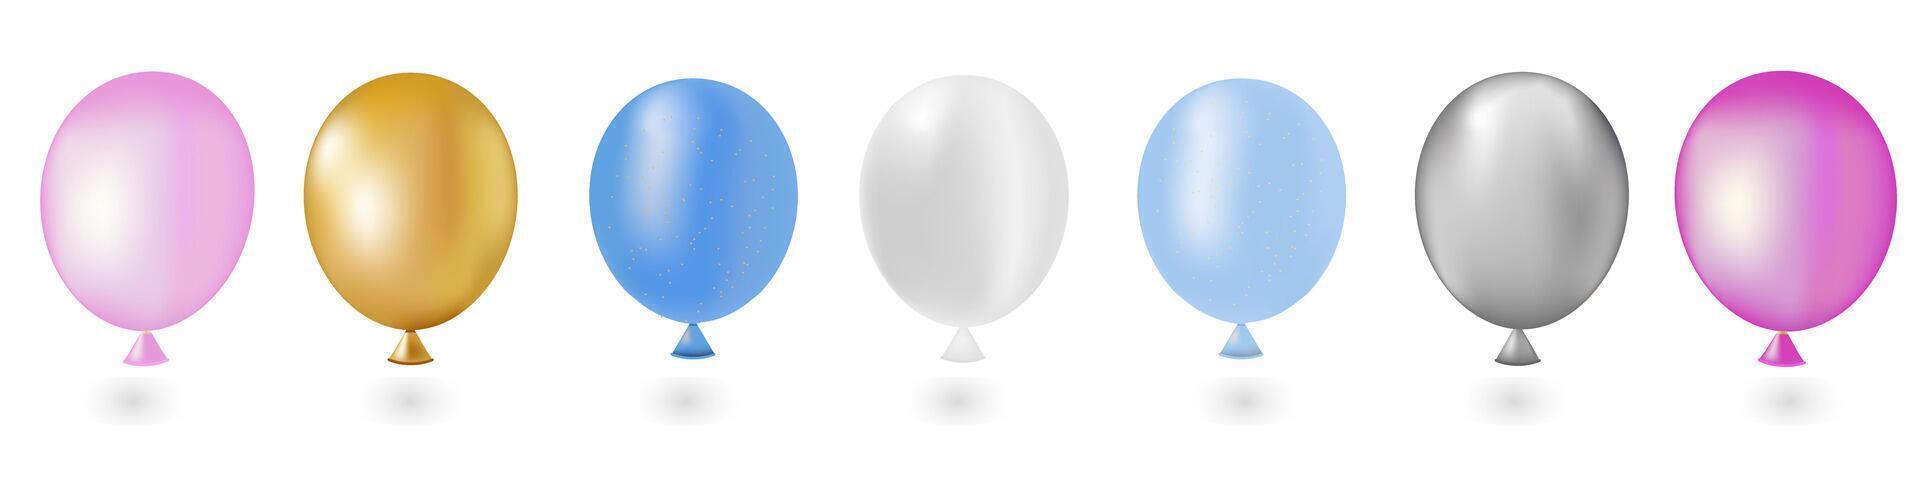 uppsättning av färgrik transparent ballonger vektor